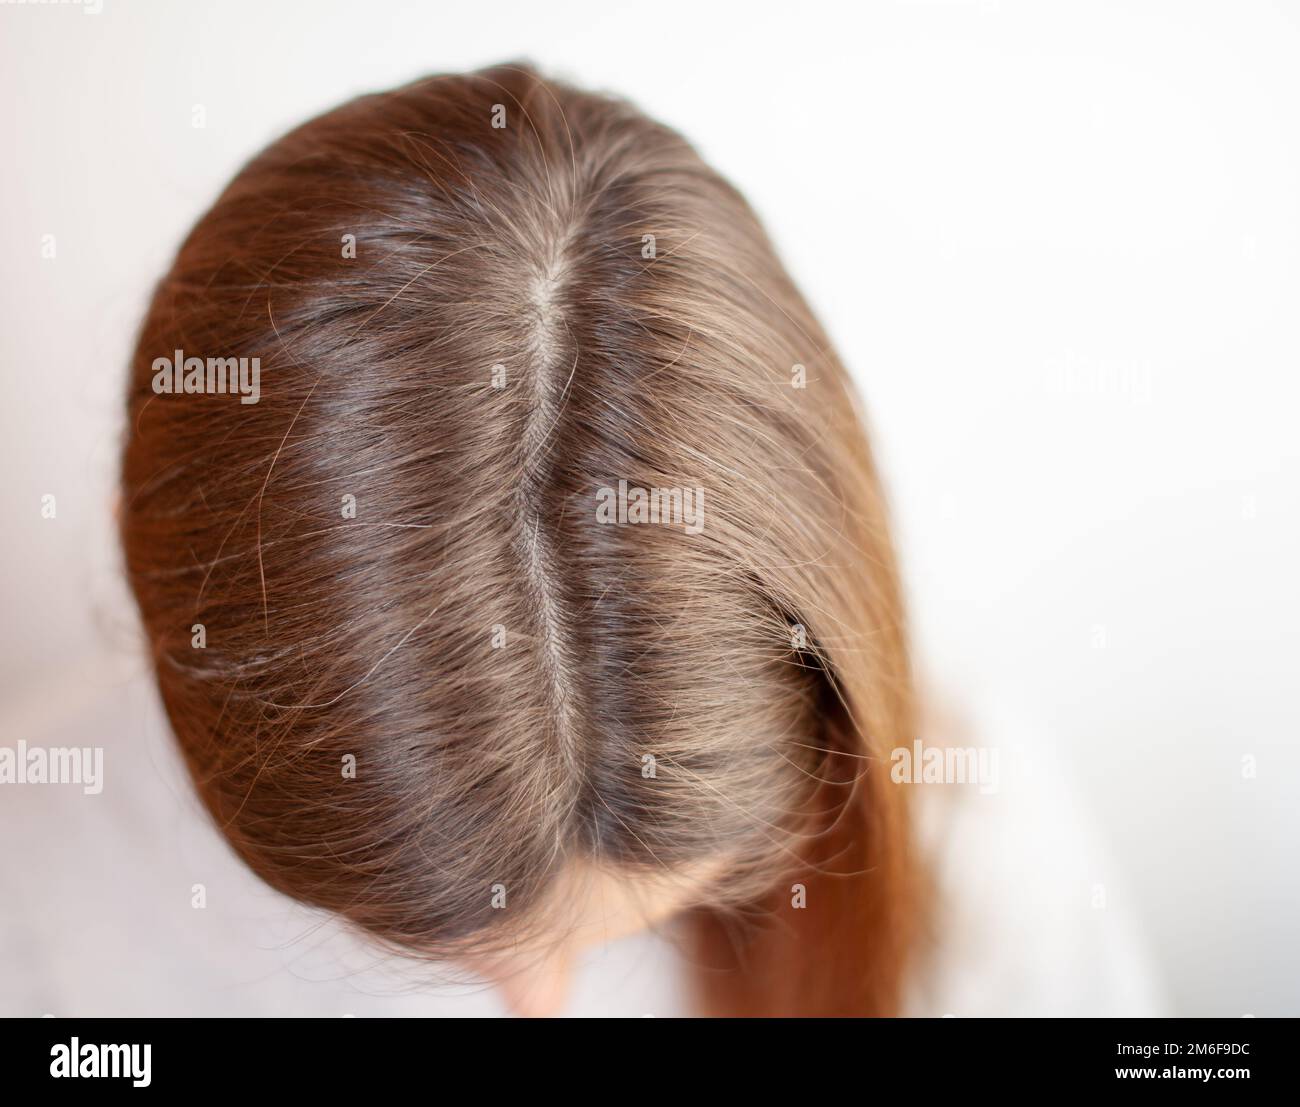 La cabeza de una mujer con un corte de pelo gris. Foto de stock